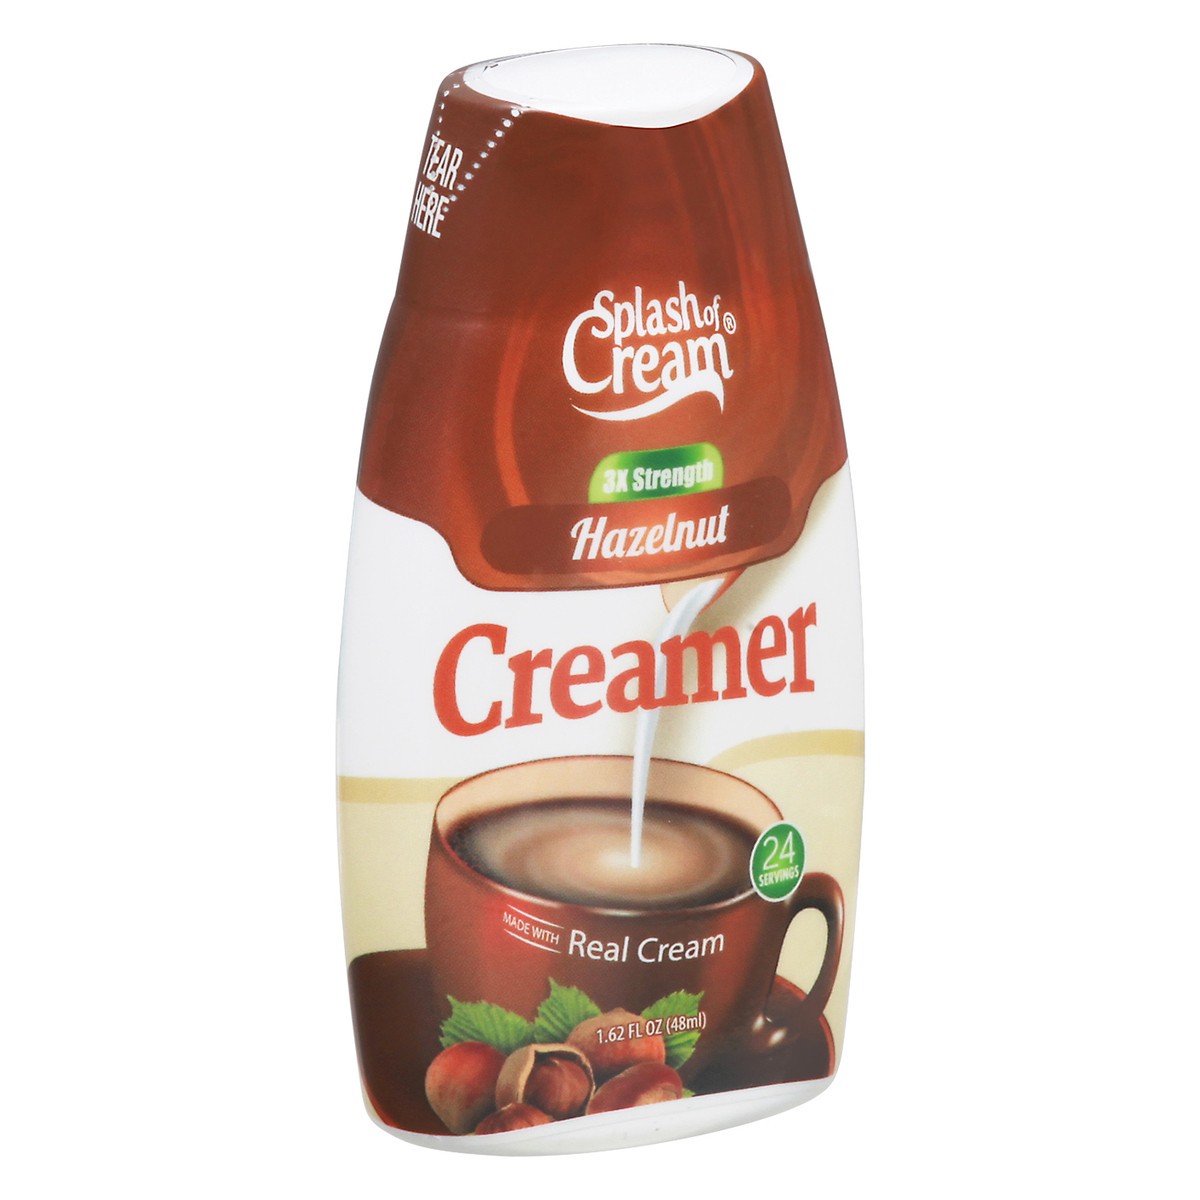 slide 4 of 9, Splash of Cream 3x Strength Hazelnut Creamer - 1.62 fl oz, 1.62 fl oz